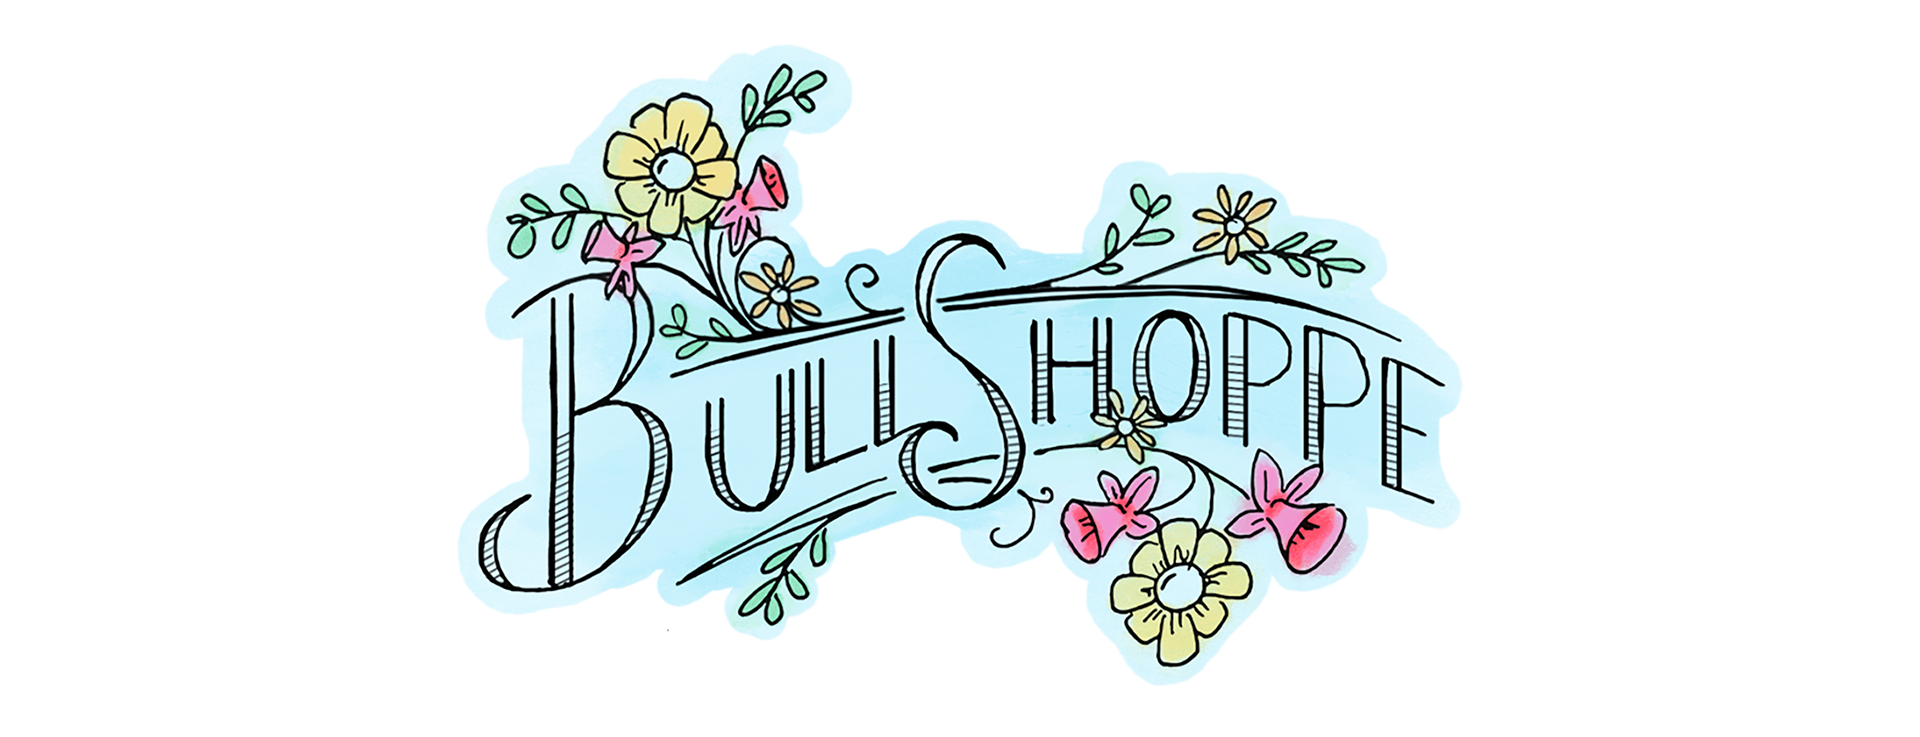 BullShoppe